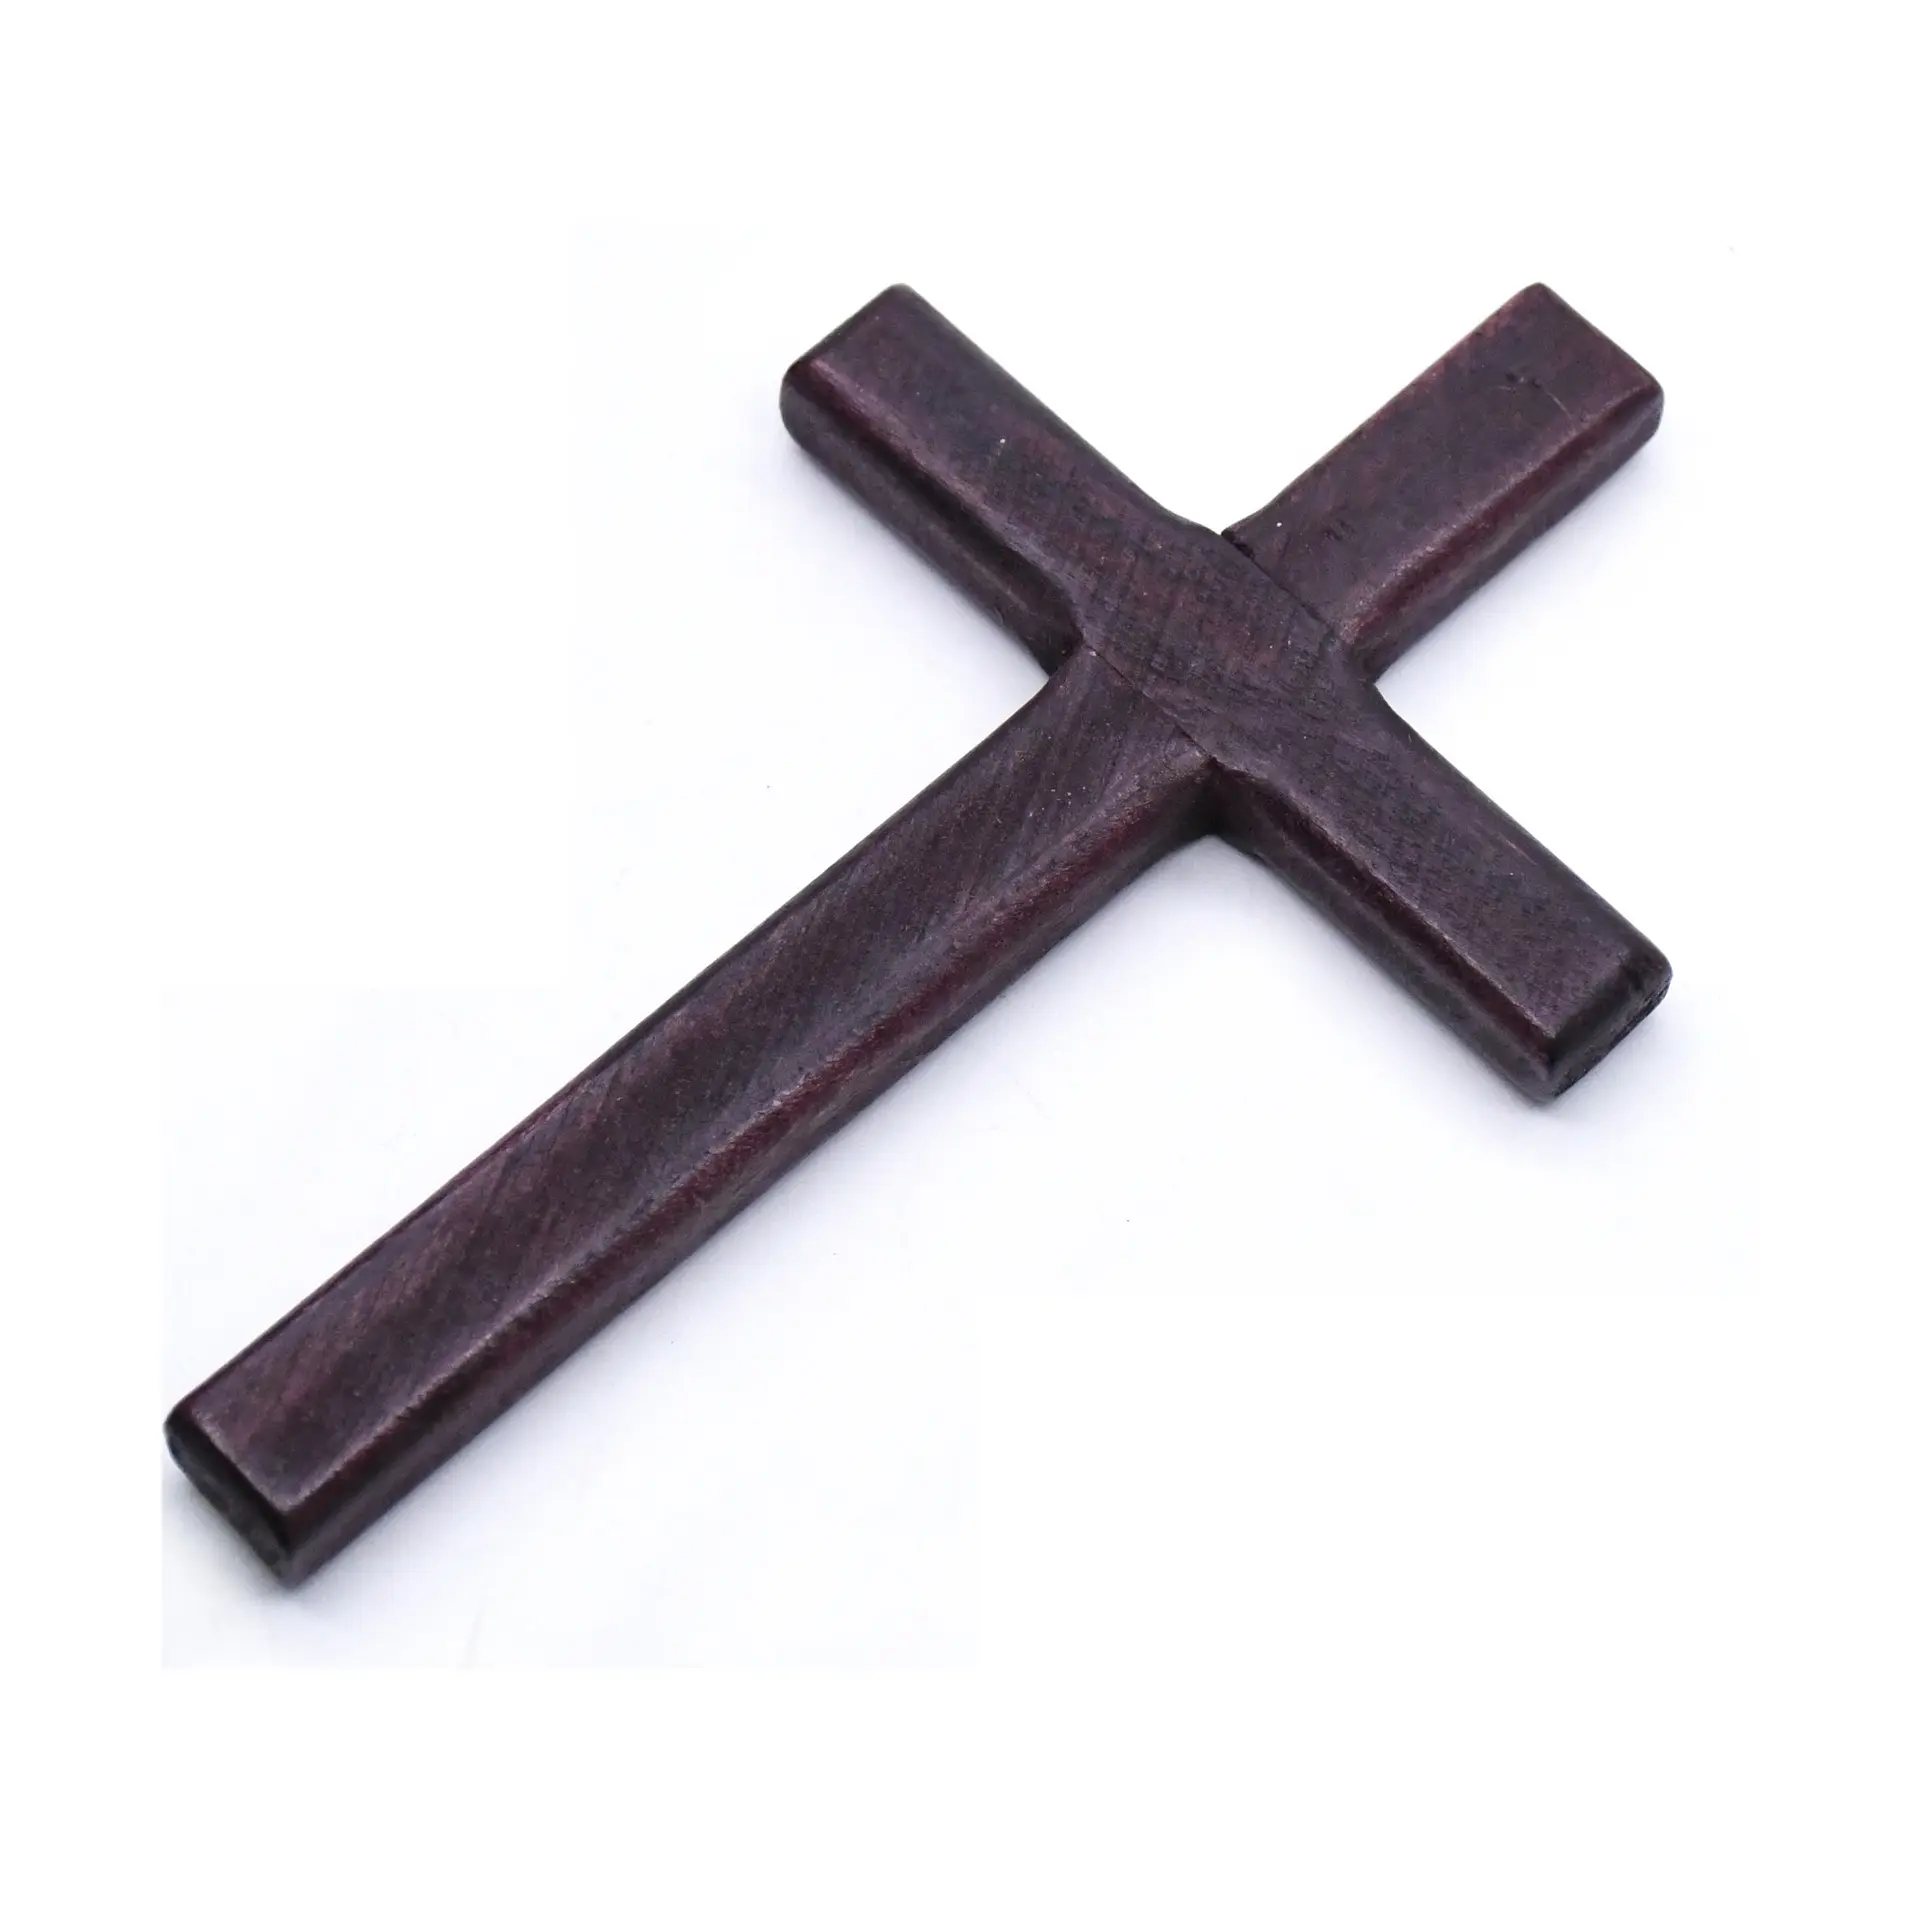 Hoye artigianato in legno croce tenuta in mano croce di legno decorativa croce fatta a mano di buona qualità